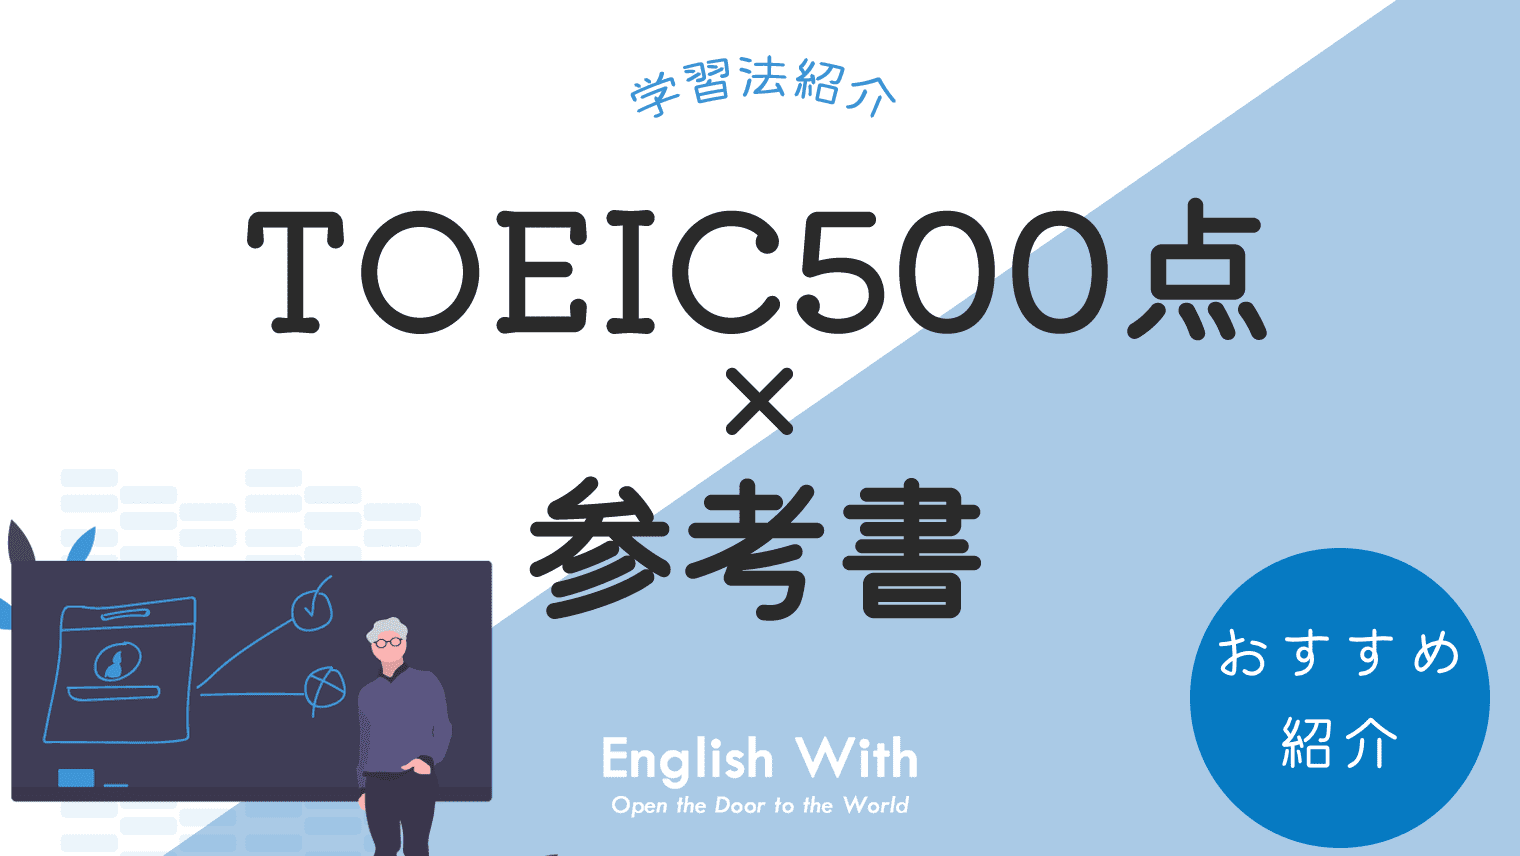 TOEIC500点を取るためにおすすめの参考書・学習法を紹介【保存版 